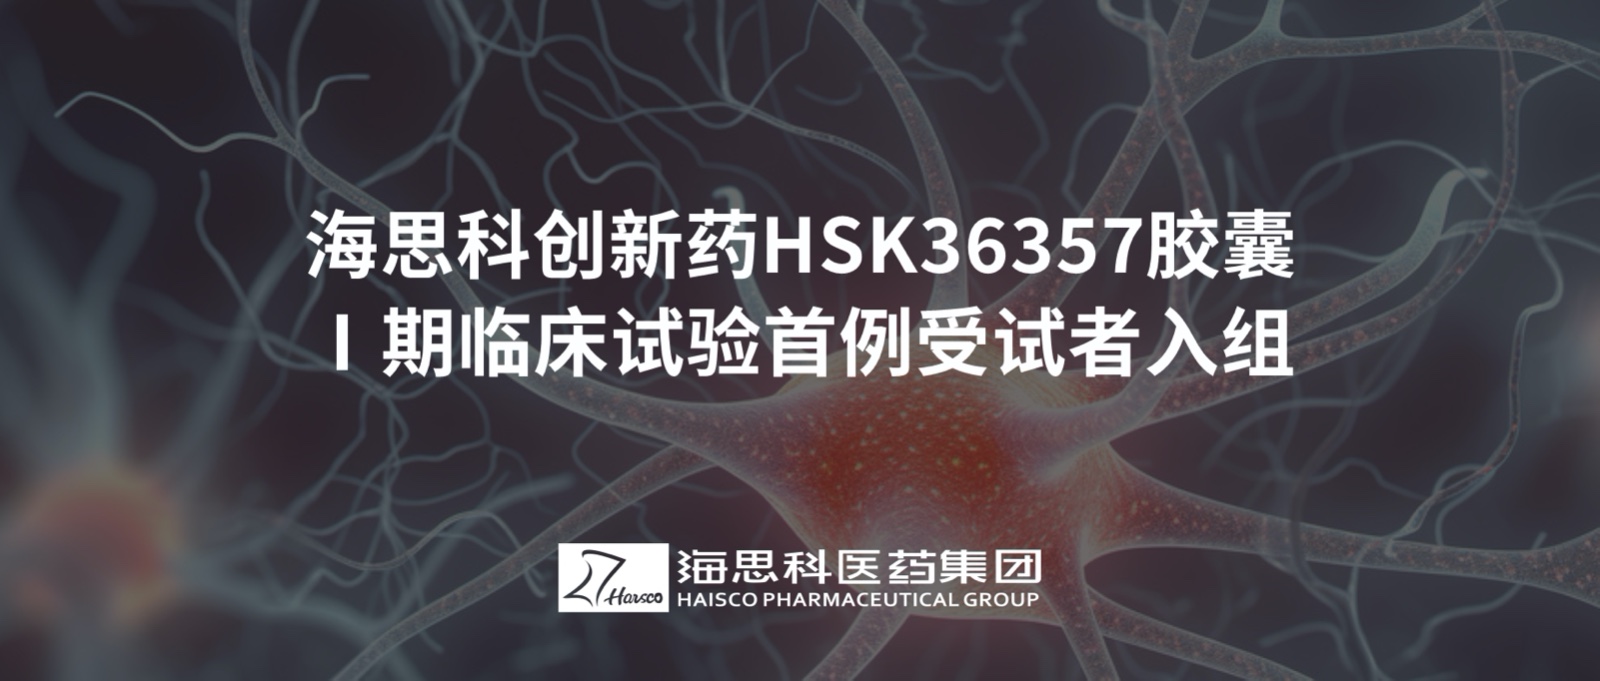 yd2333云顶电子游戏创新药HSK36357胶囊Ⅰ期临床试验首例受试者入组